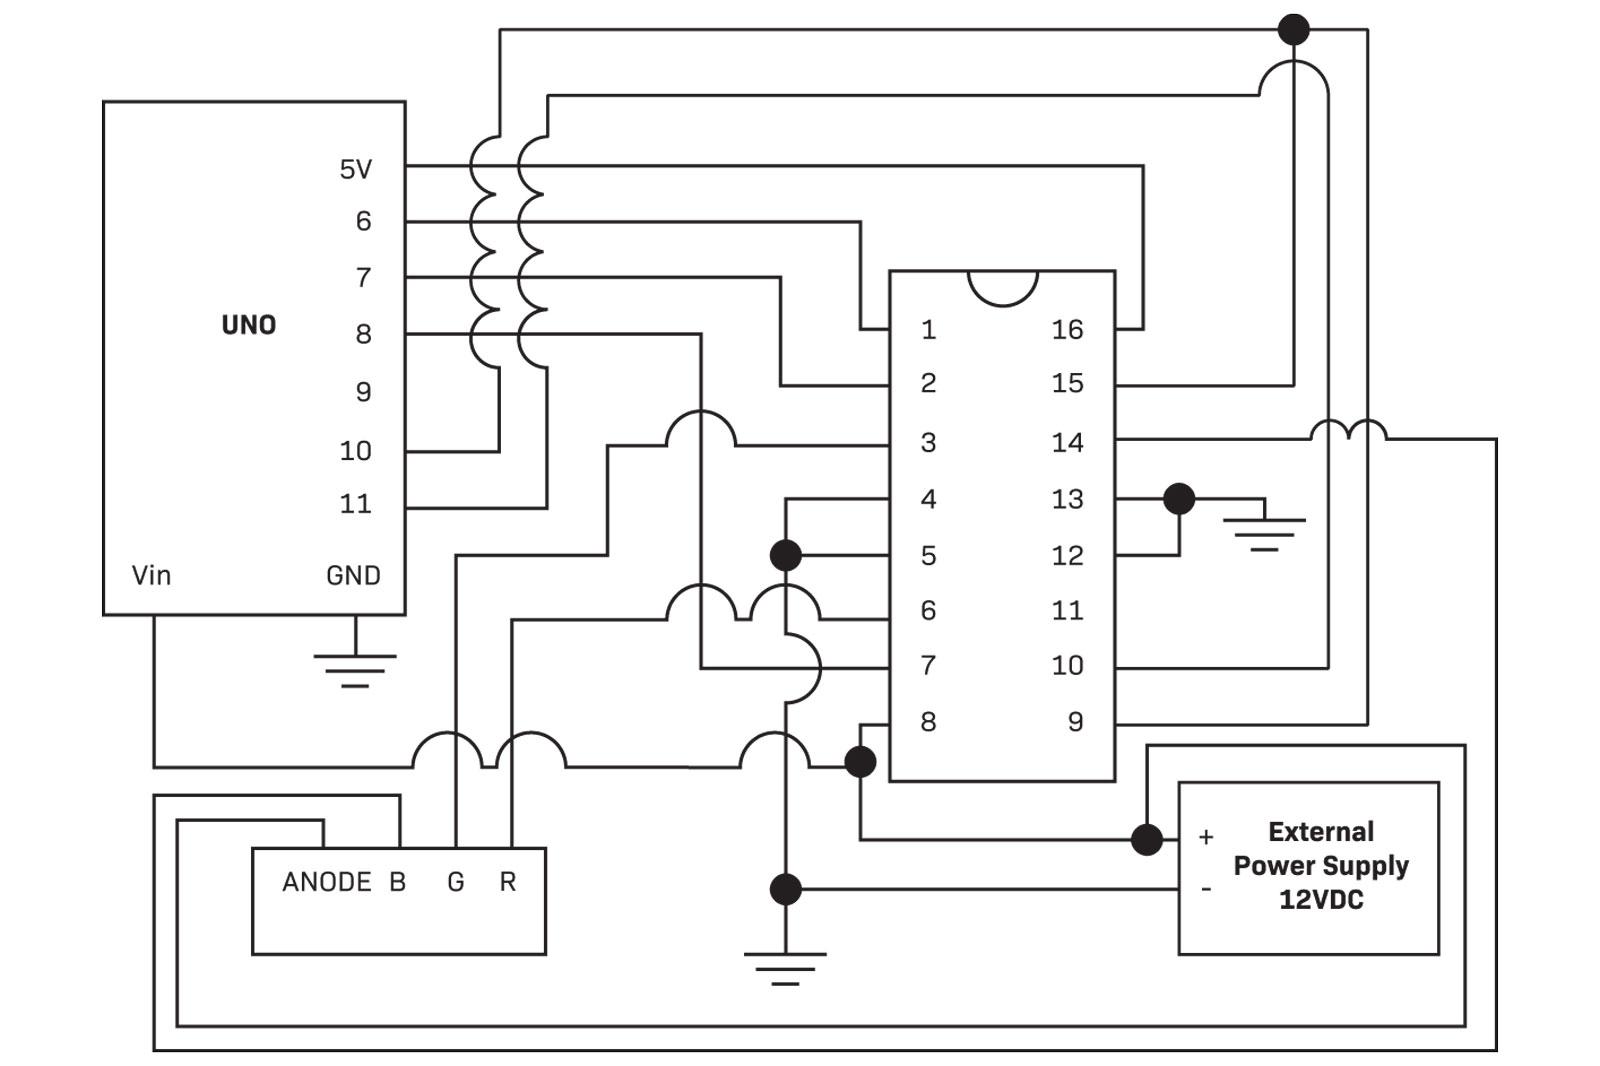 fig 8 schematic